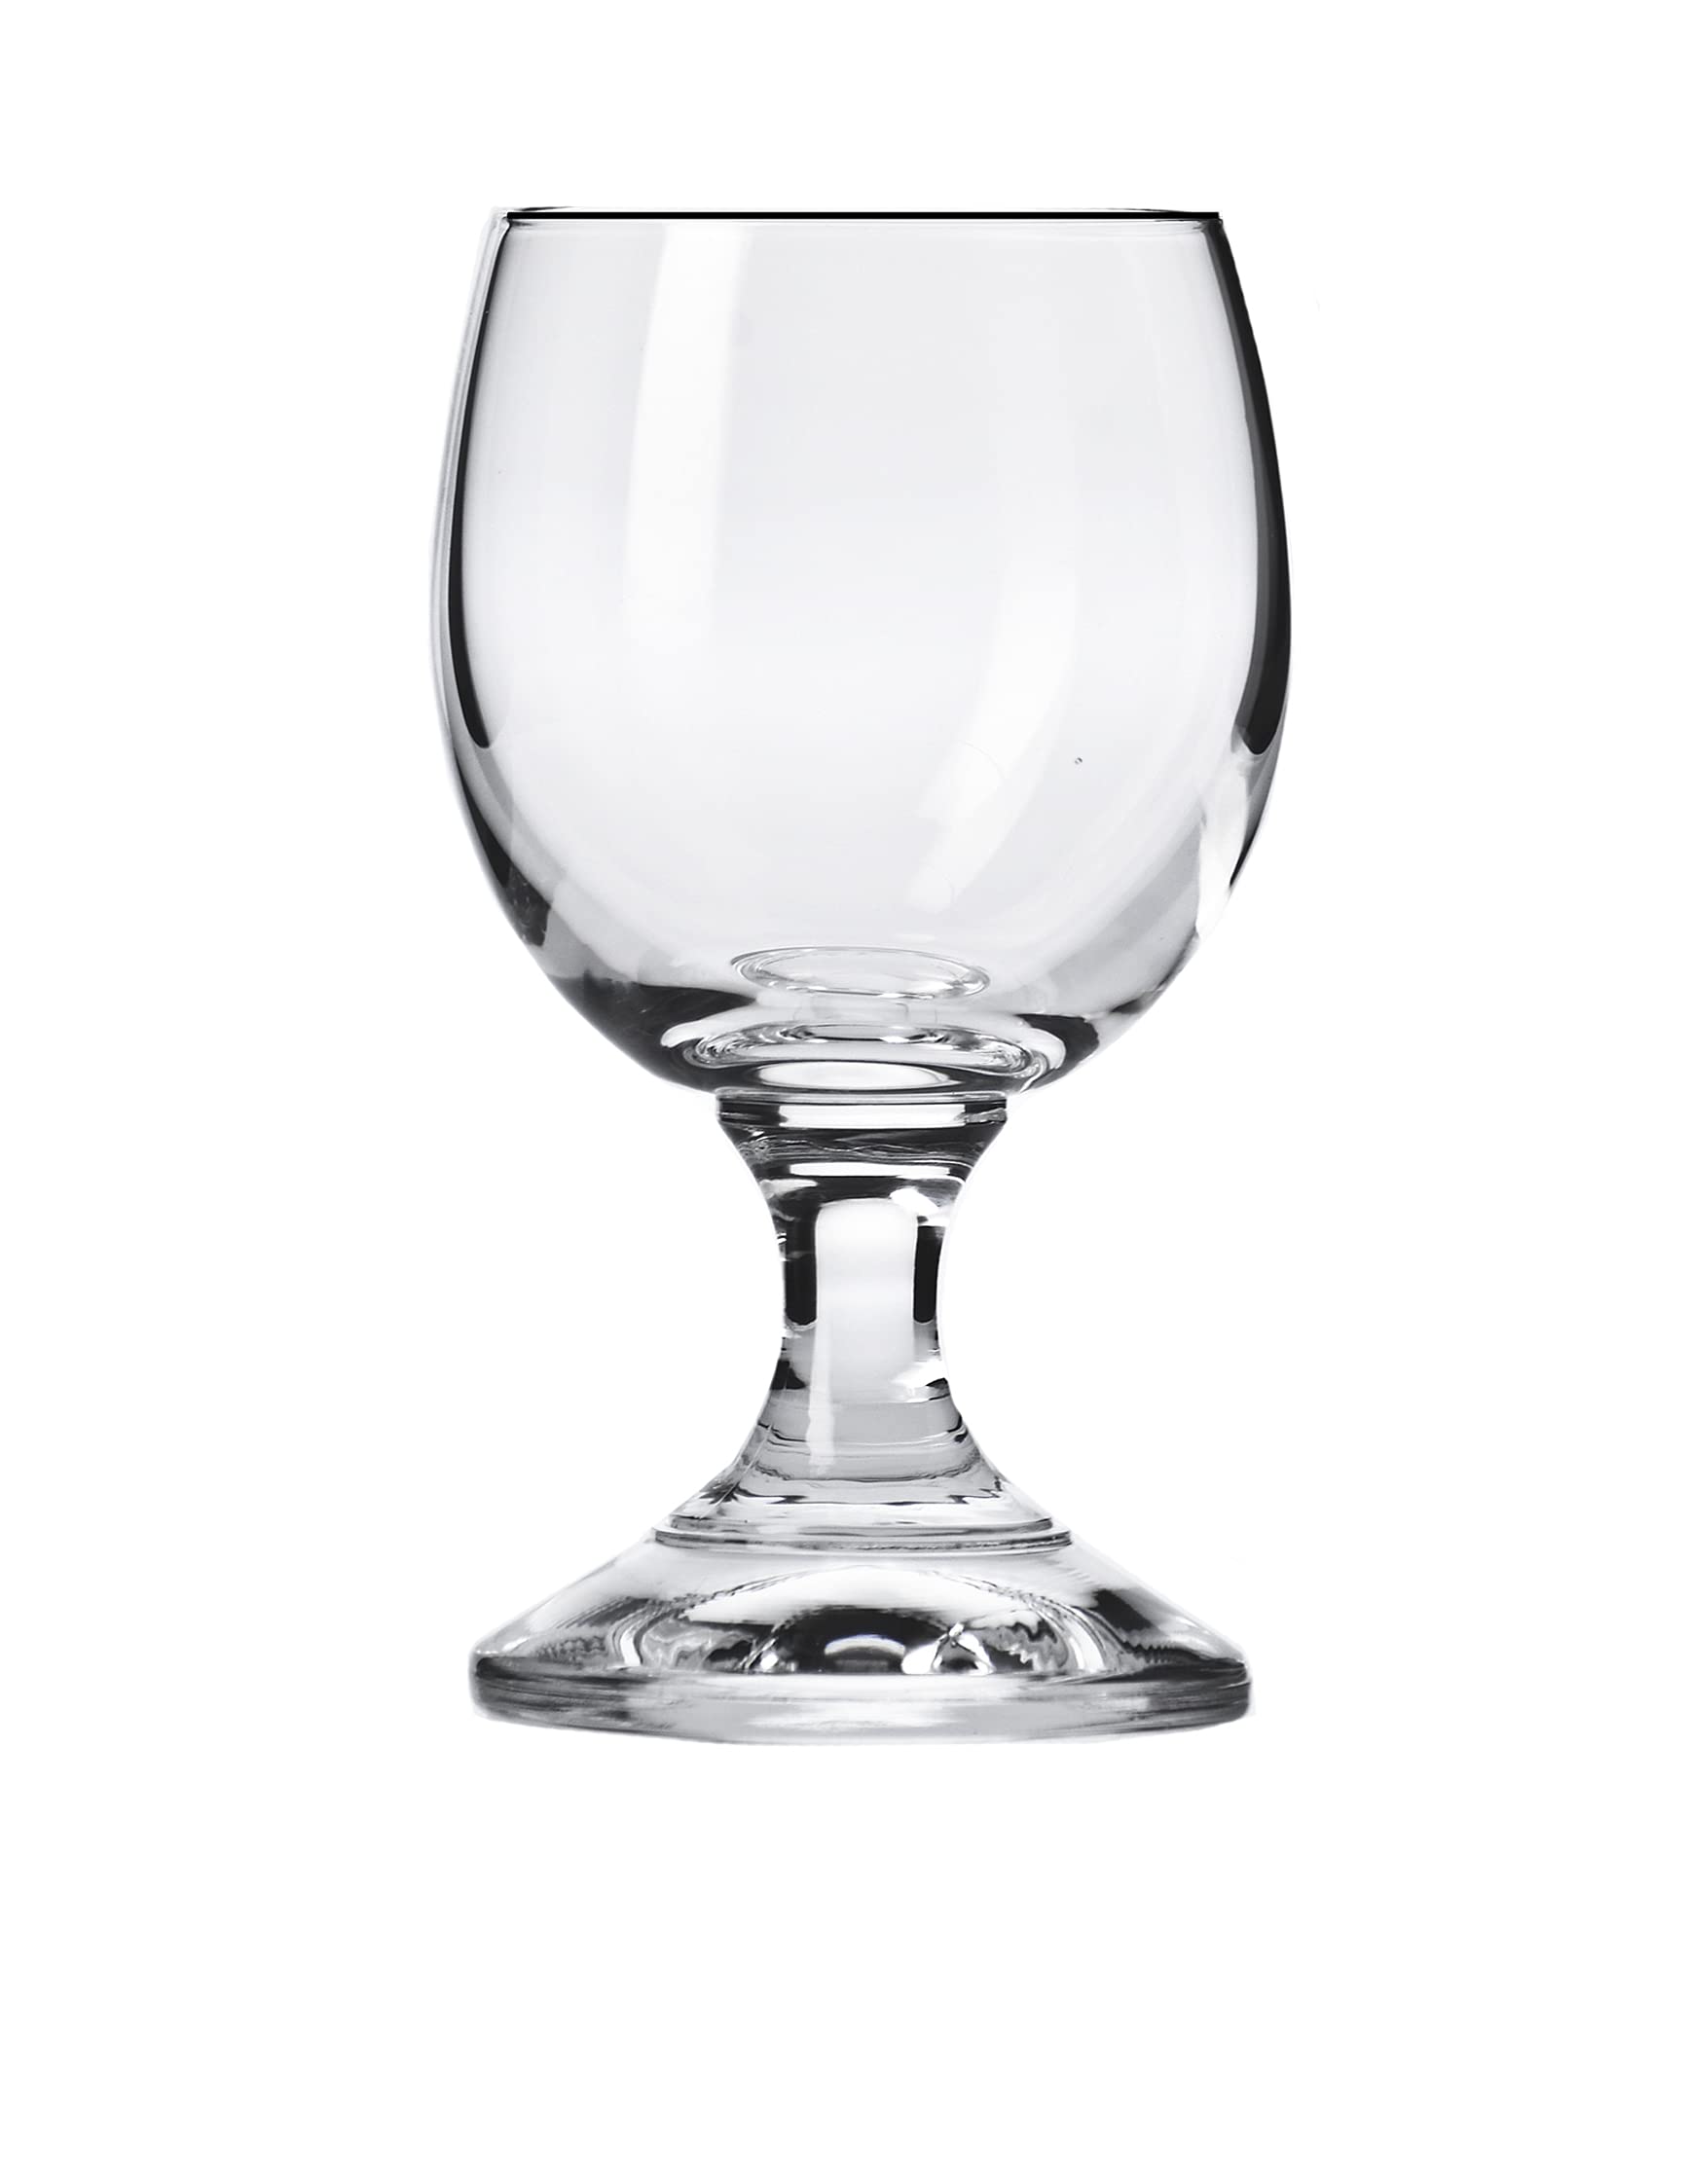 Barski Liquor Glass - Shot Glass - Stemmed Glasses - Set of 6 Glasses - Crystal Glass - 1.4 Oz. - Use it for - Liquor - Whiskey - Vodka - Cordial -Very Durable